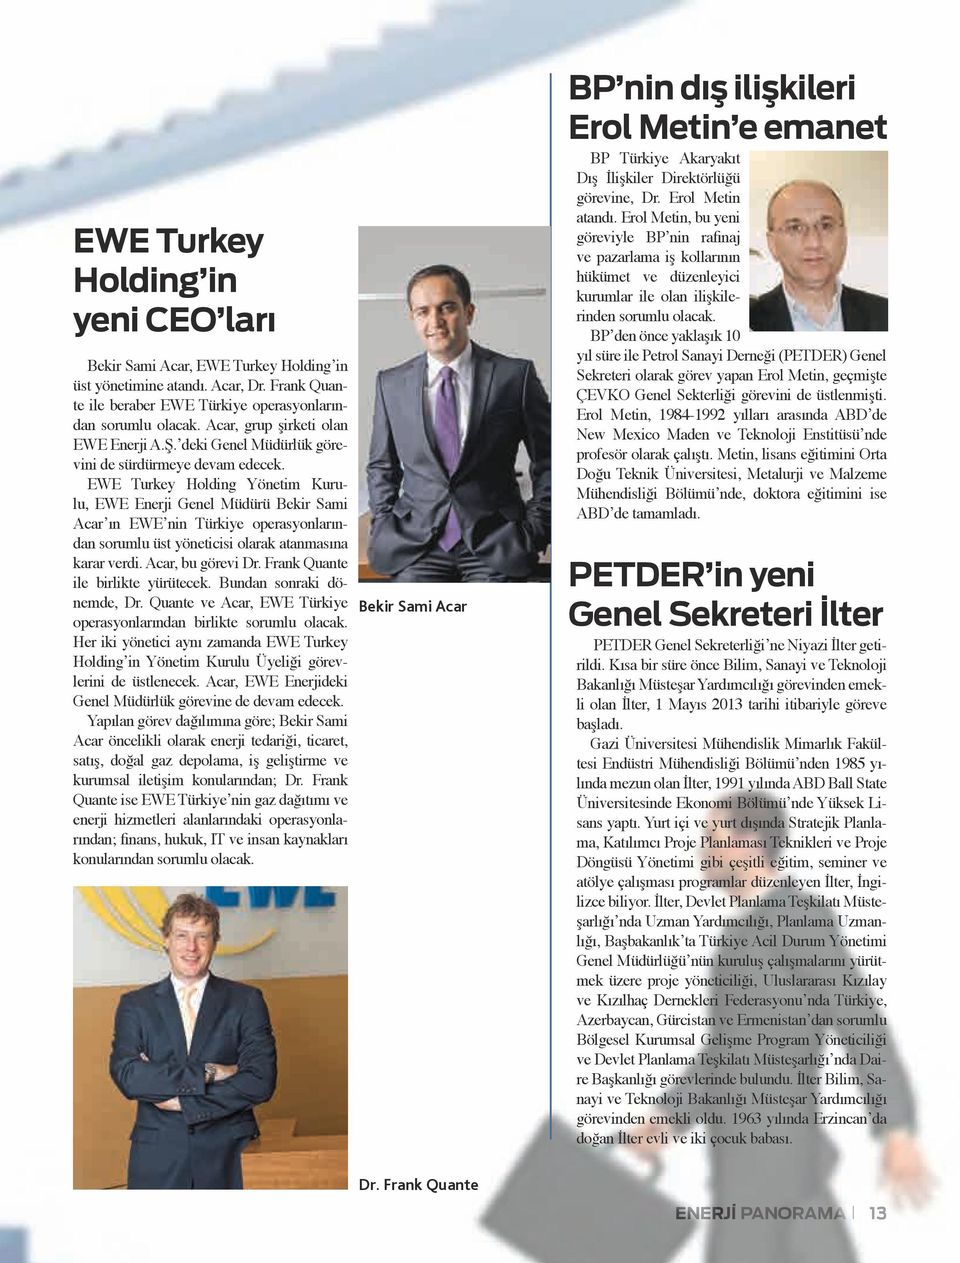 EWE Turkey Holding Yönetim Kurulu, EWE Enerji Genel Müdürü Bekir Sami Acar ın EWE nin Türkiye operasyonlarından sorumlu üst yöneticisi olarak atanmasına karar verdi. Acar, bu görevi Dr.